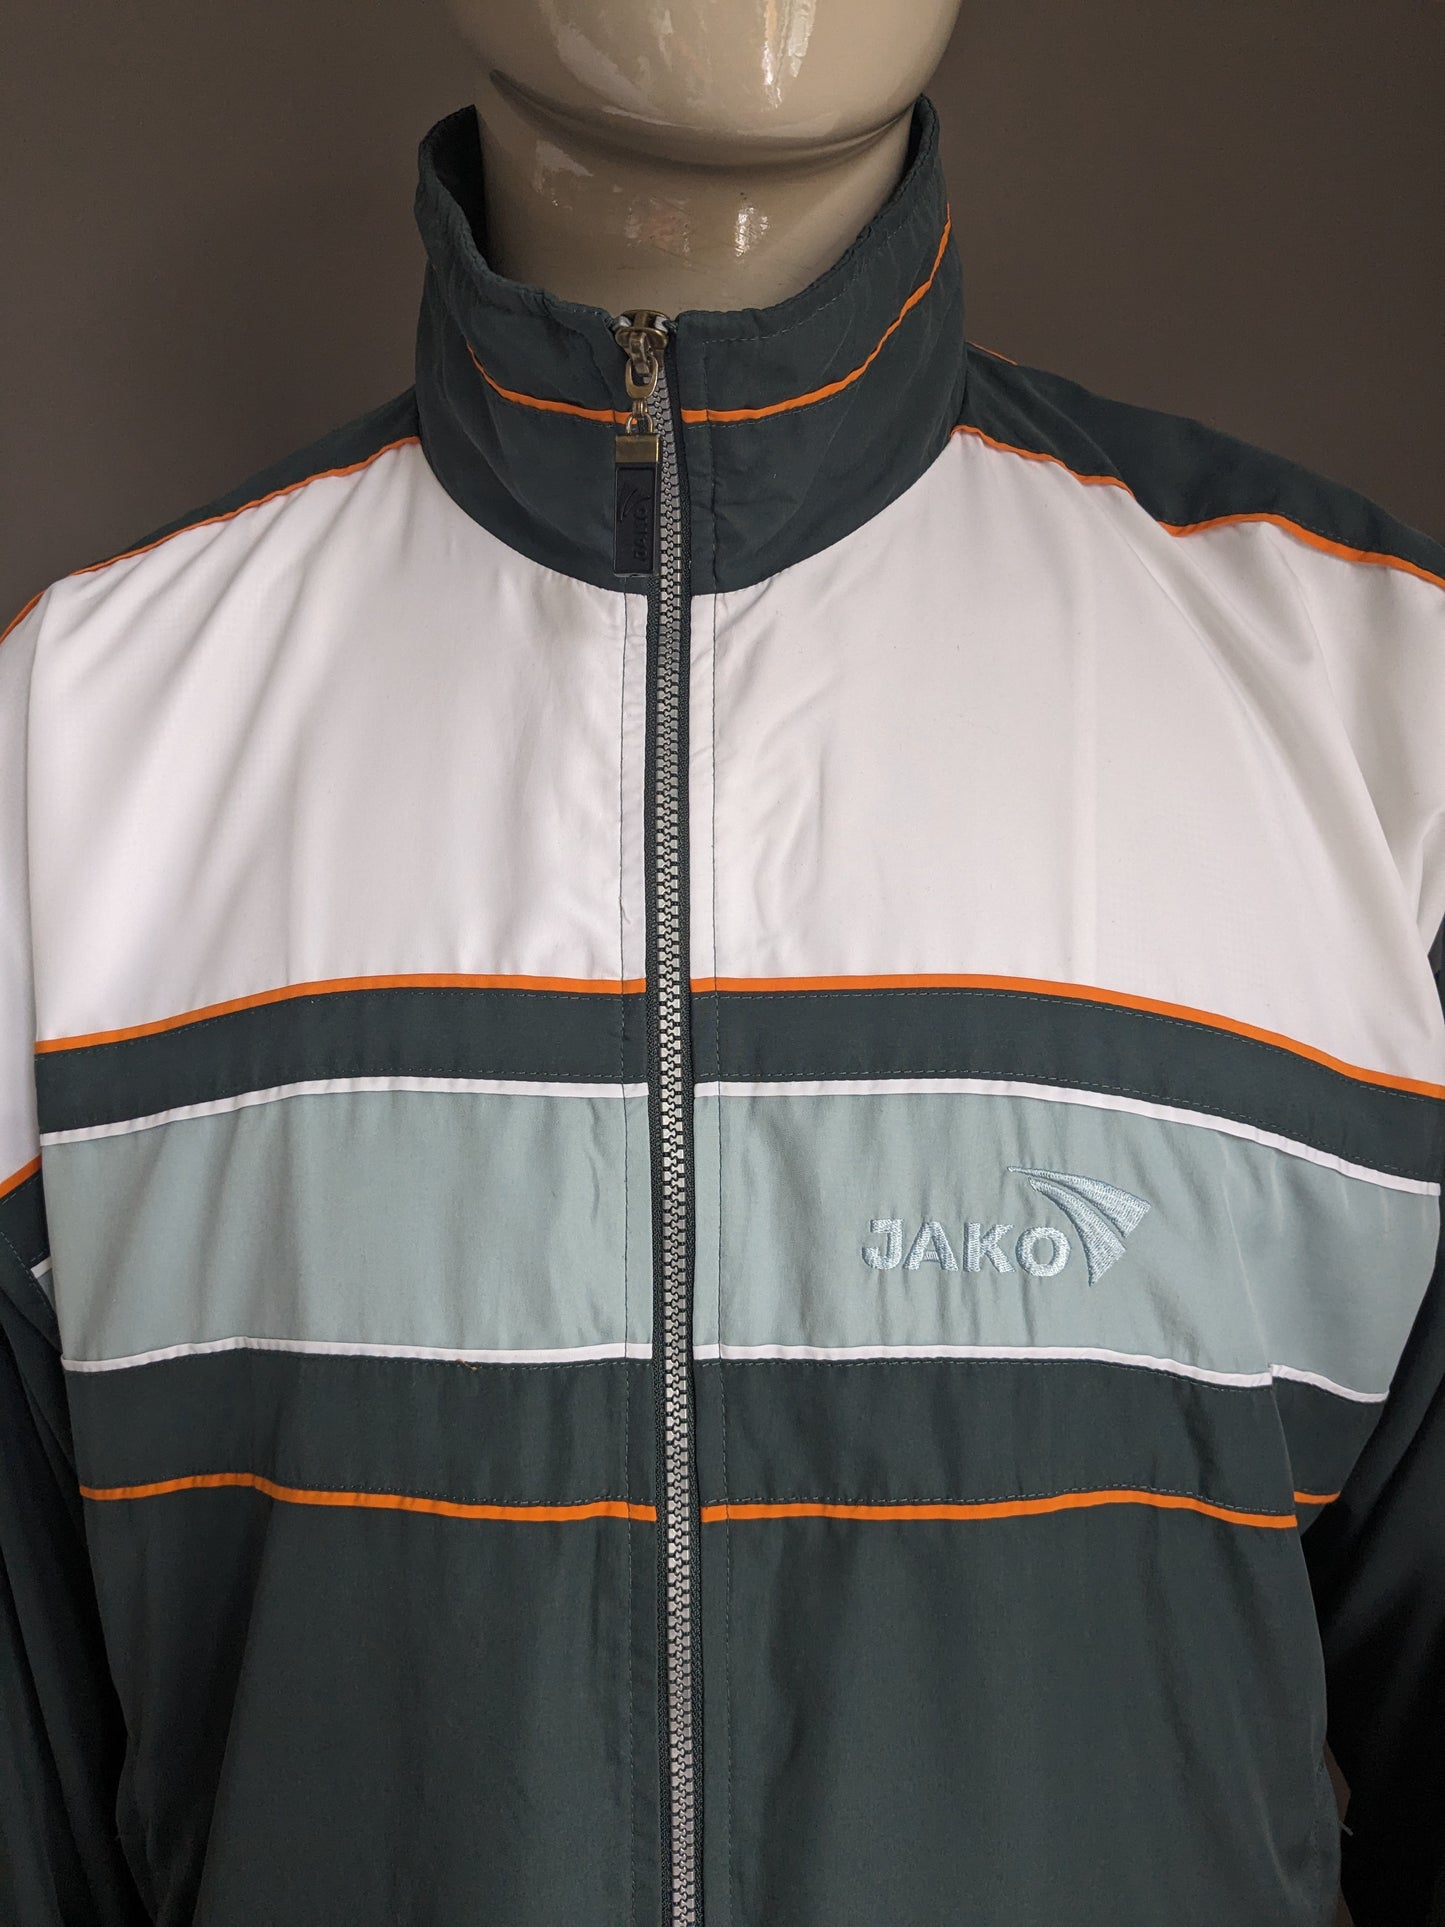 Jako Sport Jack vintage anni '80-90. Colorato bianco arancione verde. Dimensione 2xl / xxl.